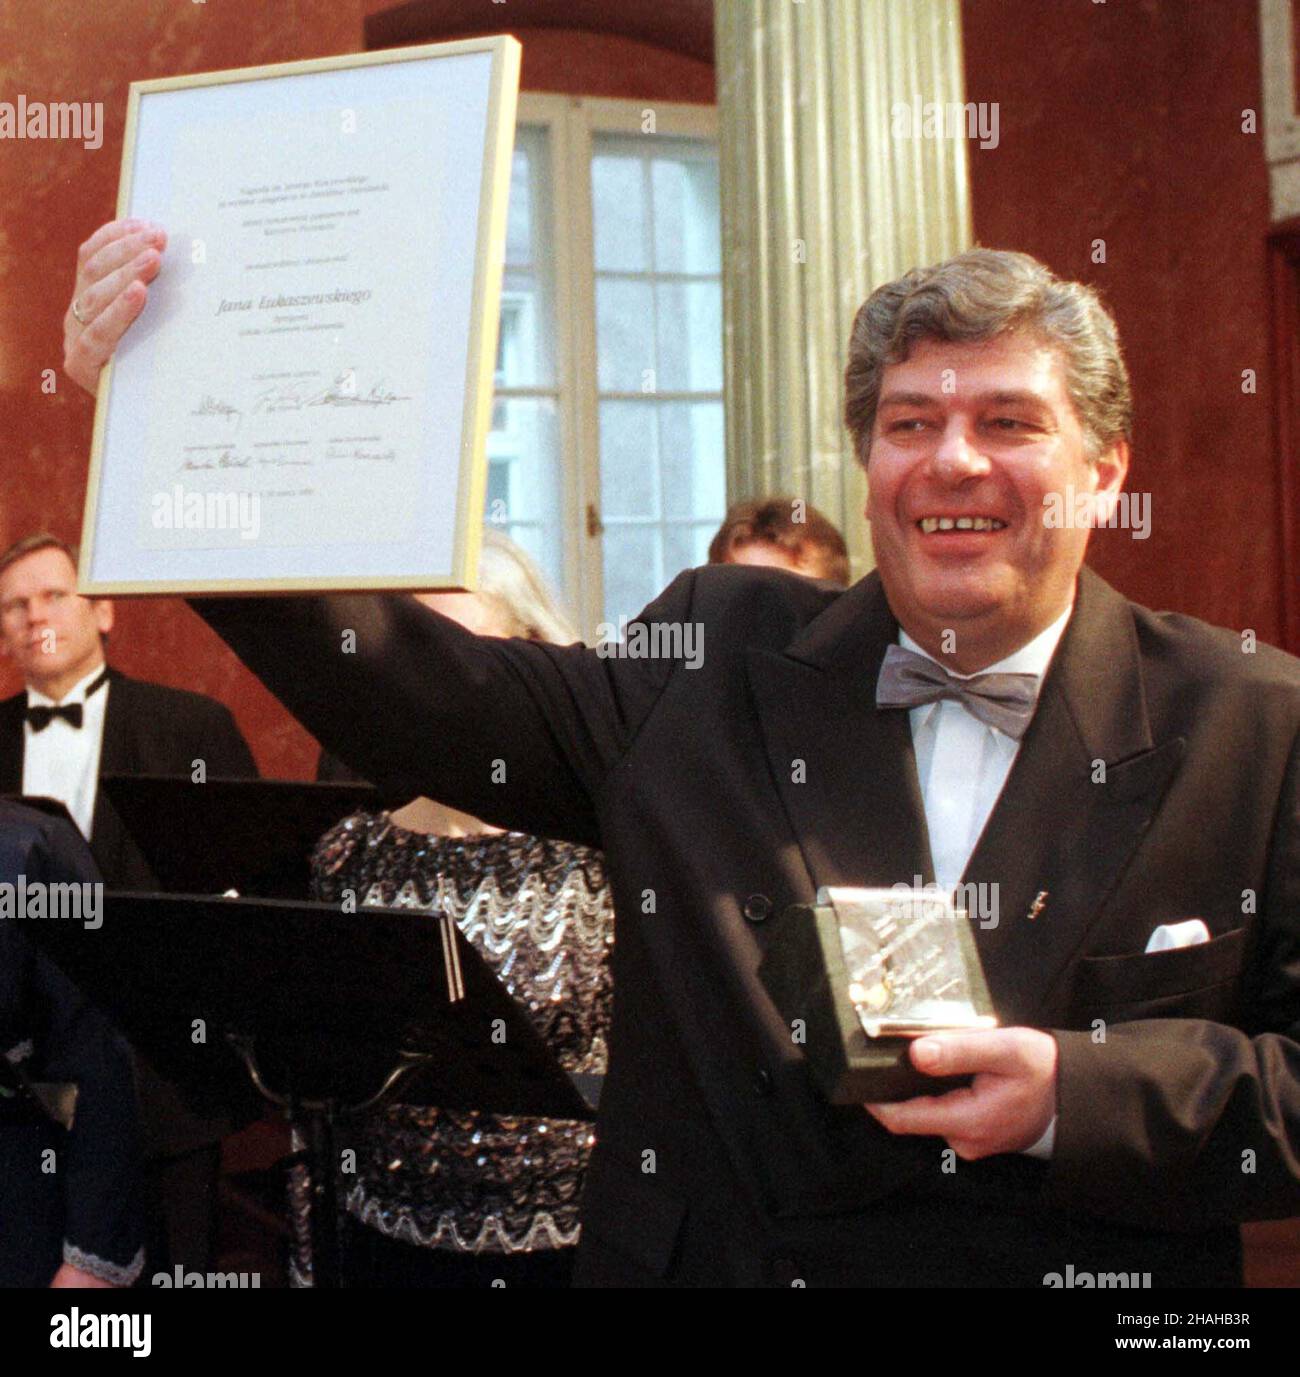 Poznañ, 30.03.2000. W Pa³acu Dzia³yñskich wrêczono nagrodê im. Jerzego Kurczewskiego - Janowi £ukaszewskiemu (na zdjêciu), dyrygentowi Chóru Kameralnego Schola Cantorum Gedanensis. (mr) PAP/Remigiusz Sikora     Poznan, 30.03.2000. Jan Lukaszewski, conductor of the Schola Cantorum Gedanensis, awarded with a Jerzy Kurczewski award. (mr) PAP/Remigiusz Sikora Stock Photo